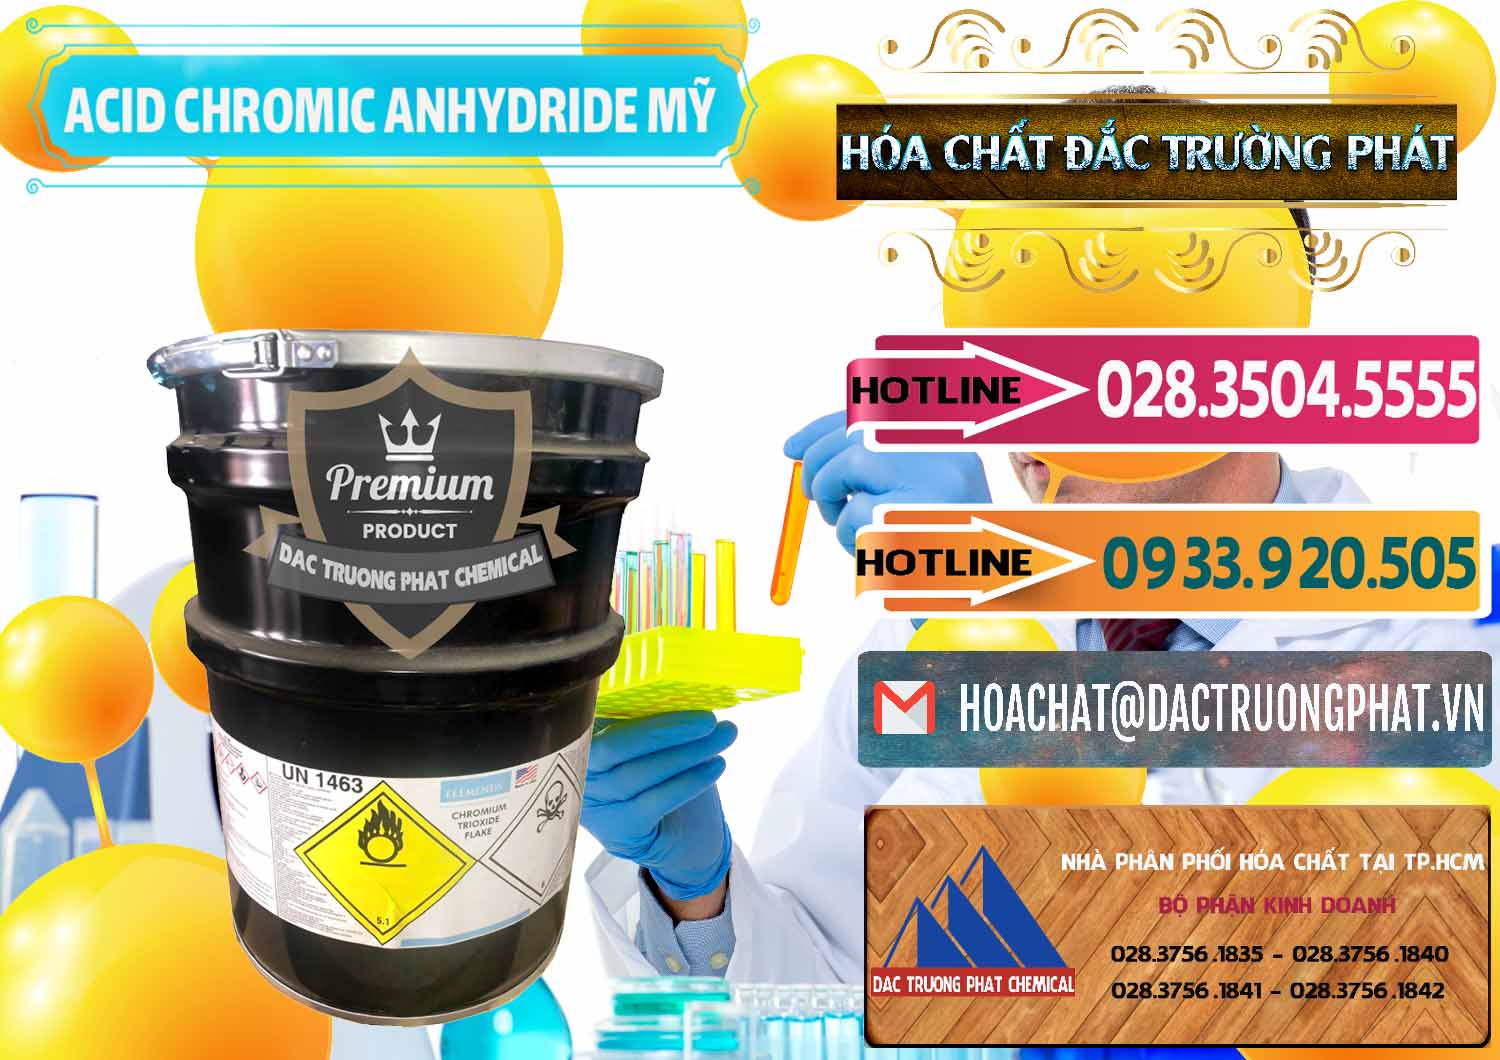 Công ty chuyên cung ứng _ bán Acid Chromic Anhydride - Cromic CRO3 USA Mỹ - 0364 - Nhà cung cấp - nhập khẩu hóa chất tại TP.HCM - dactruongphat.vn